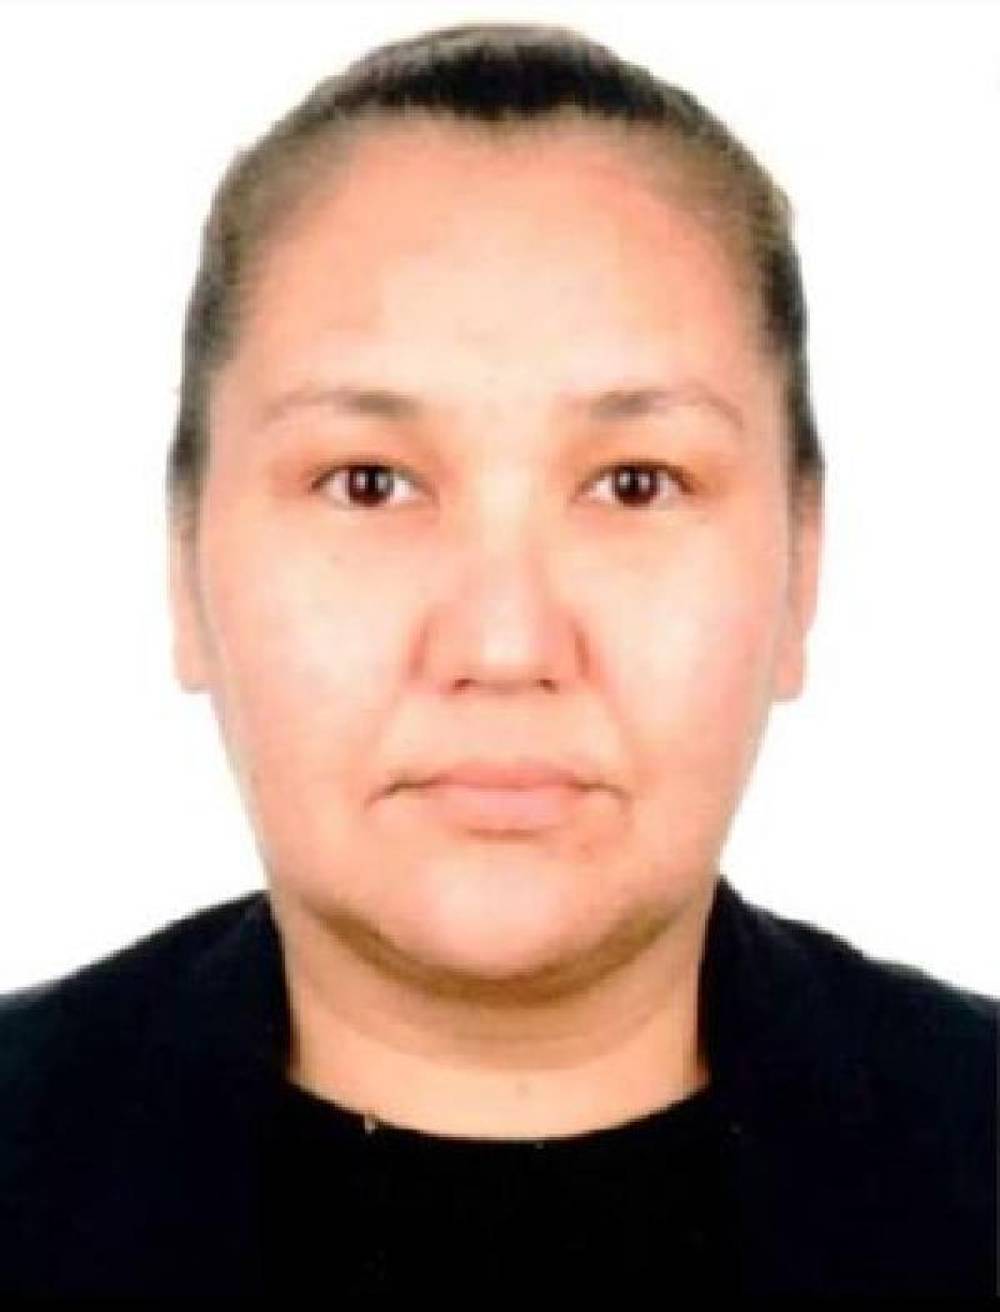 Birlikte yaşadığı Kırgız kadını öldürüp, cesedini yapraklarla örterek saklayan sanığa müebbet